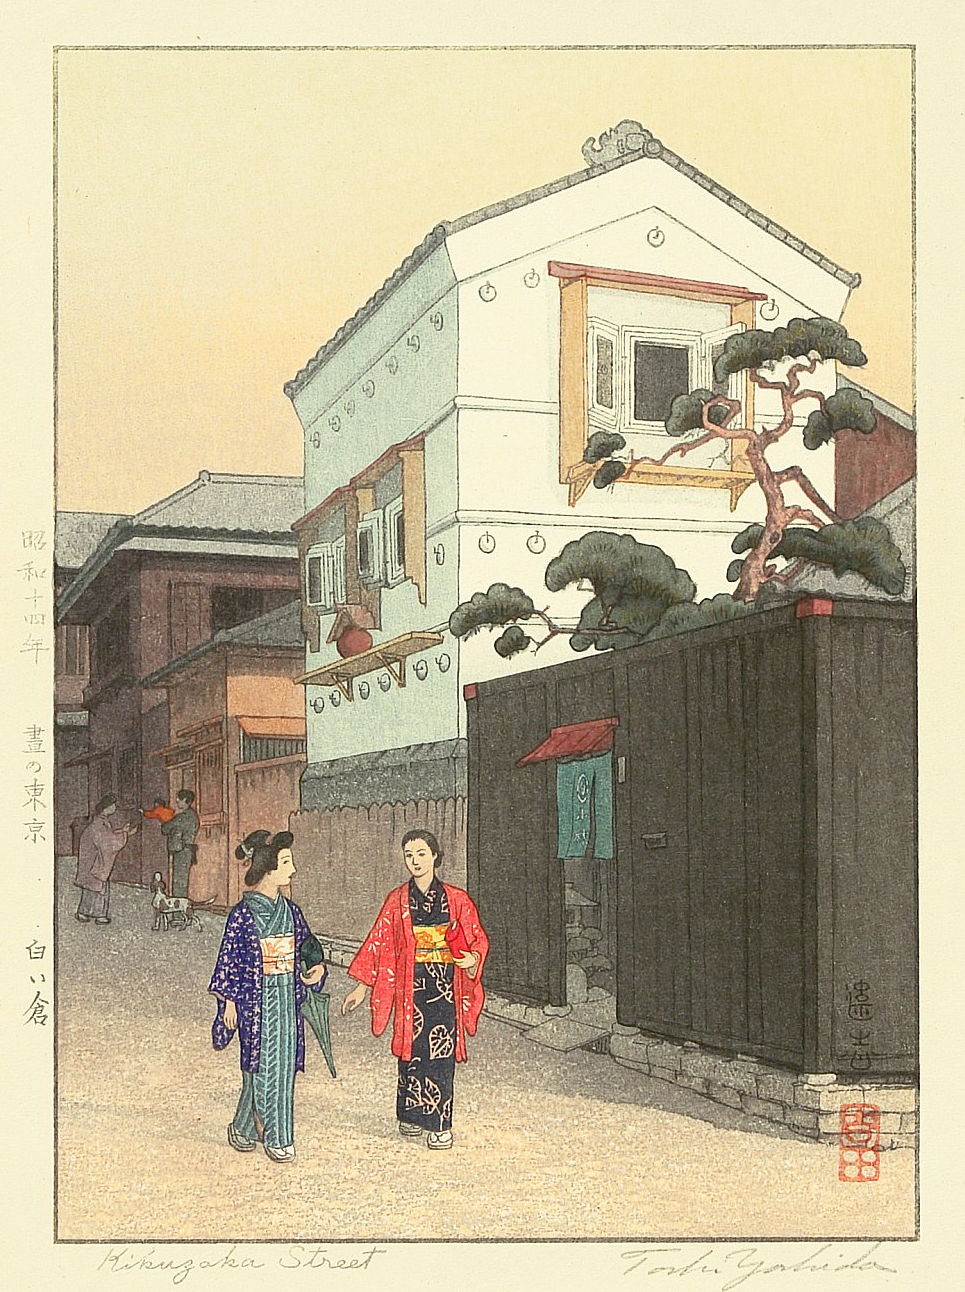 Toshi Yoshida “Kikuzaka Street” 1939 woodblock print